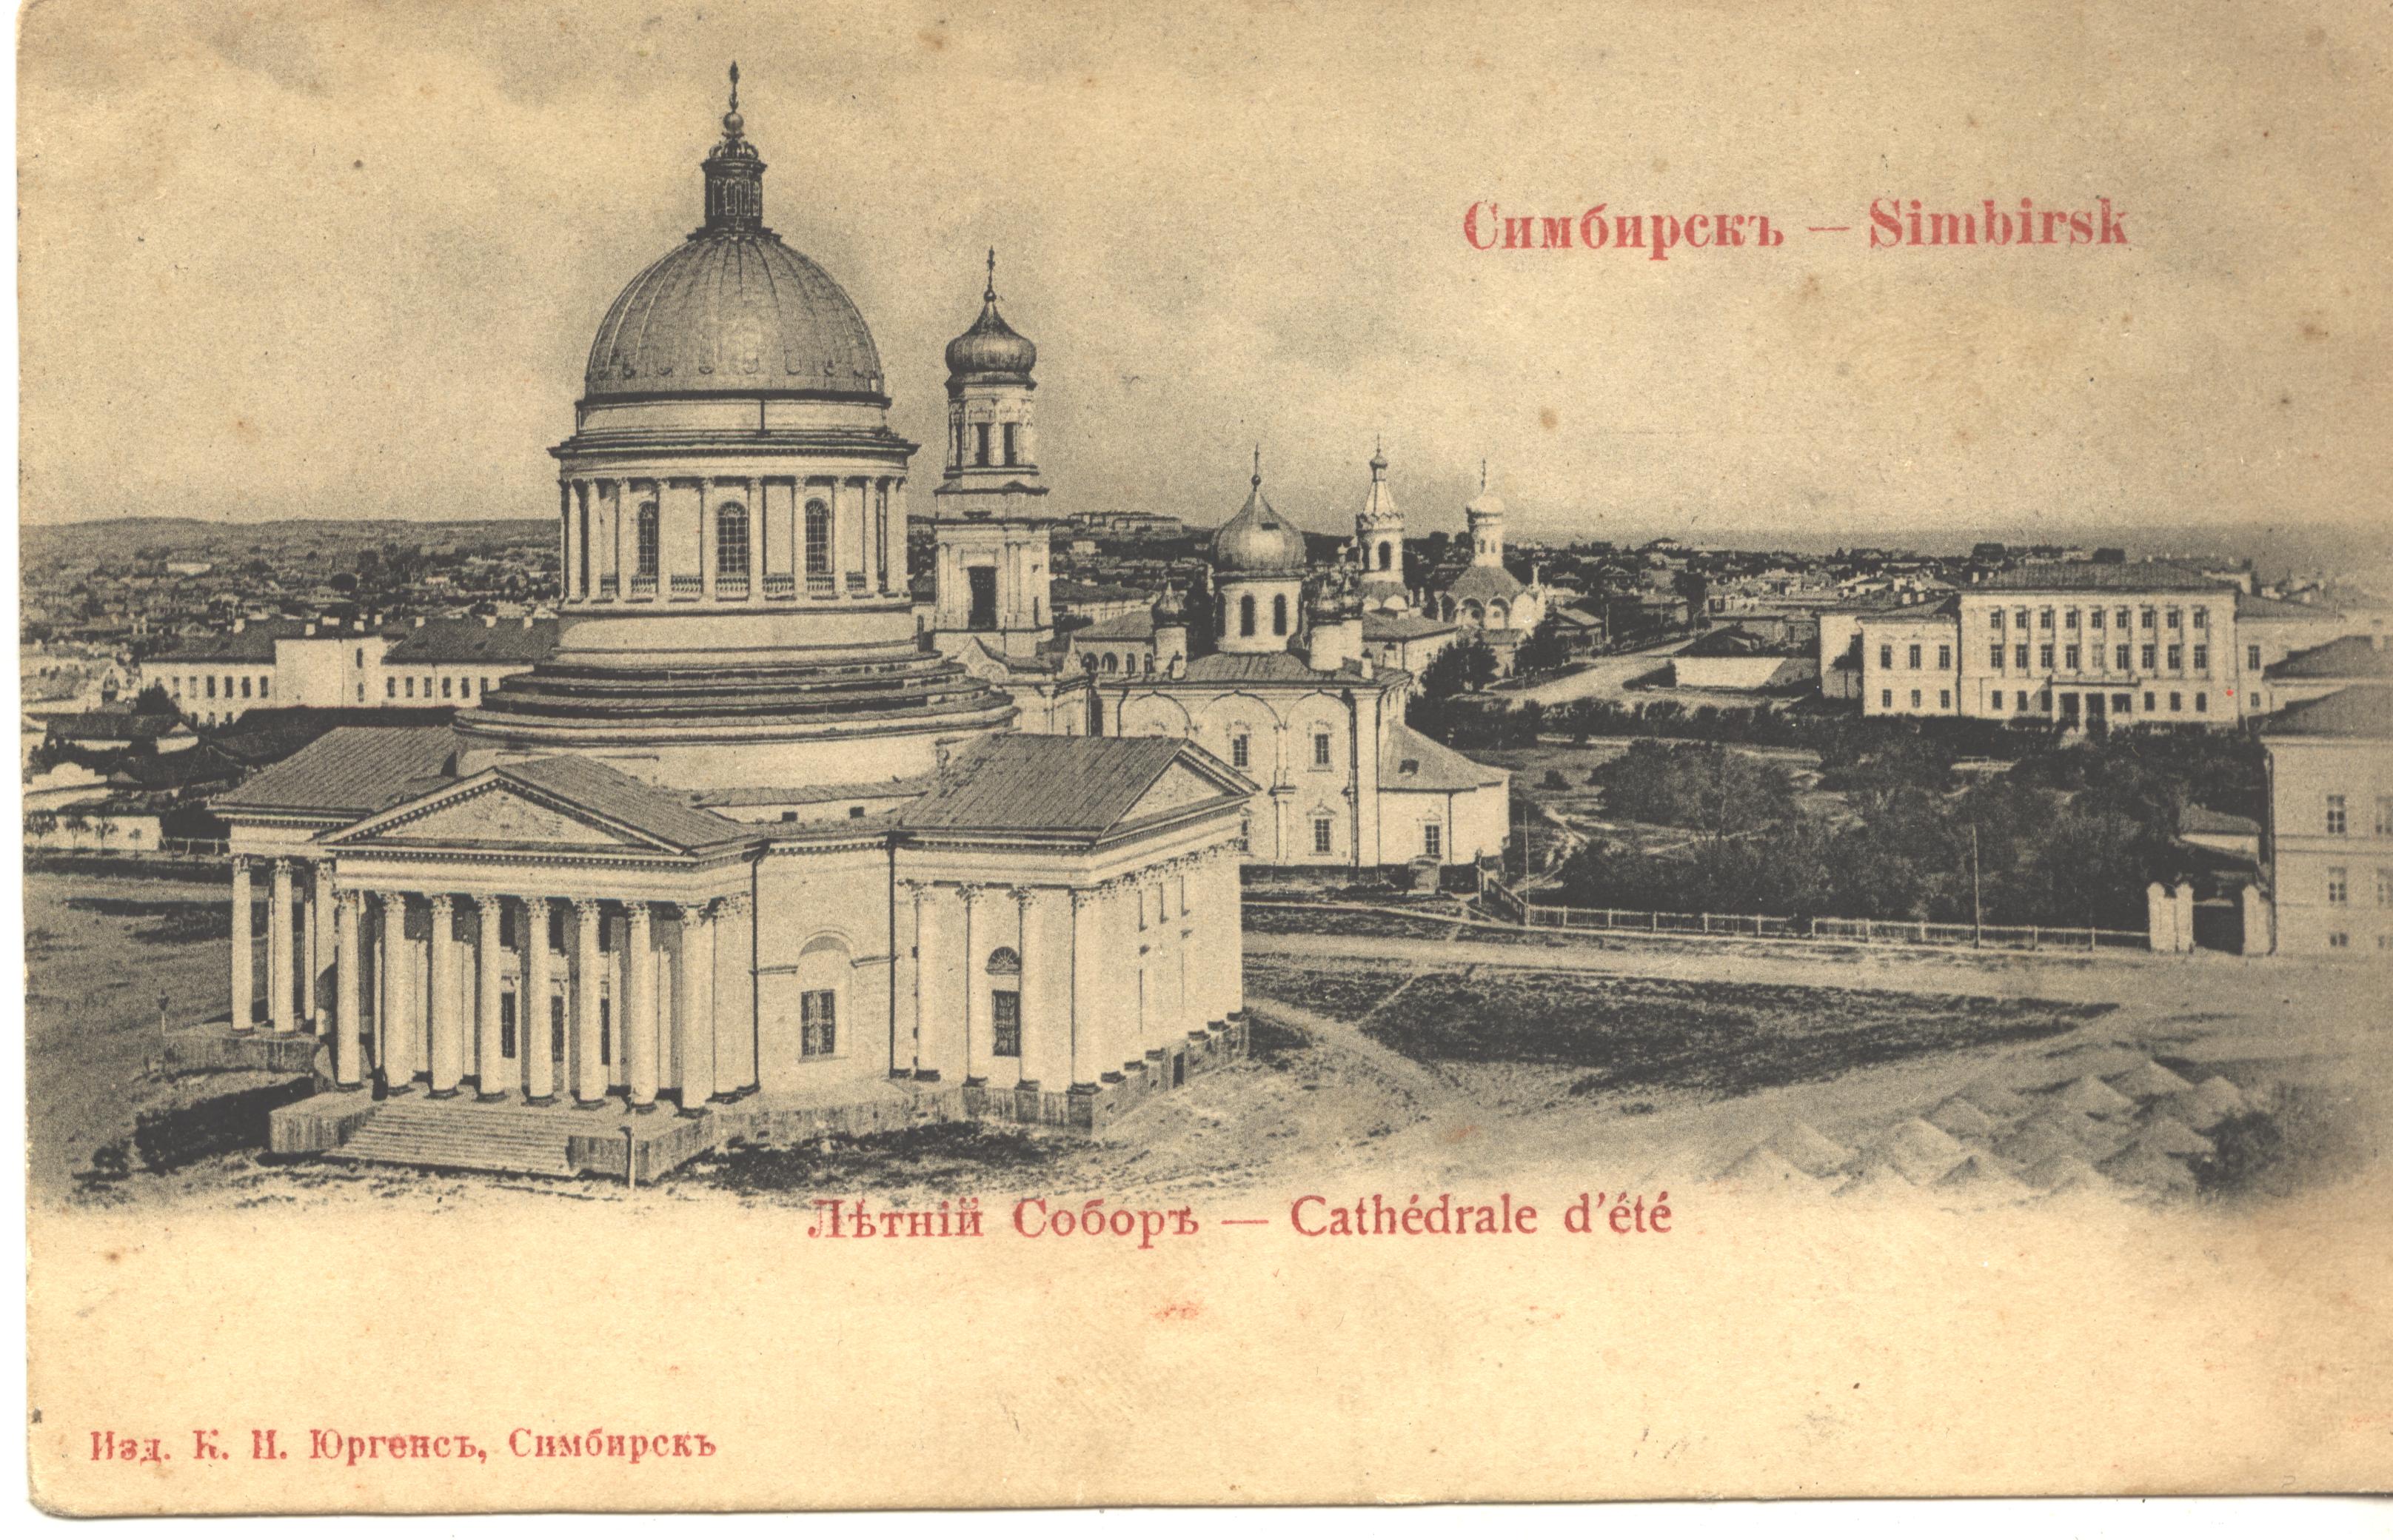 ульяновск троицкий собор